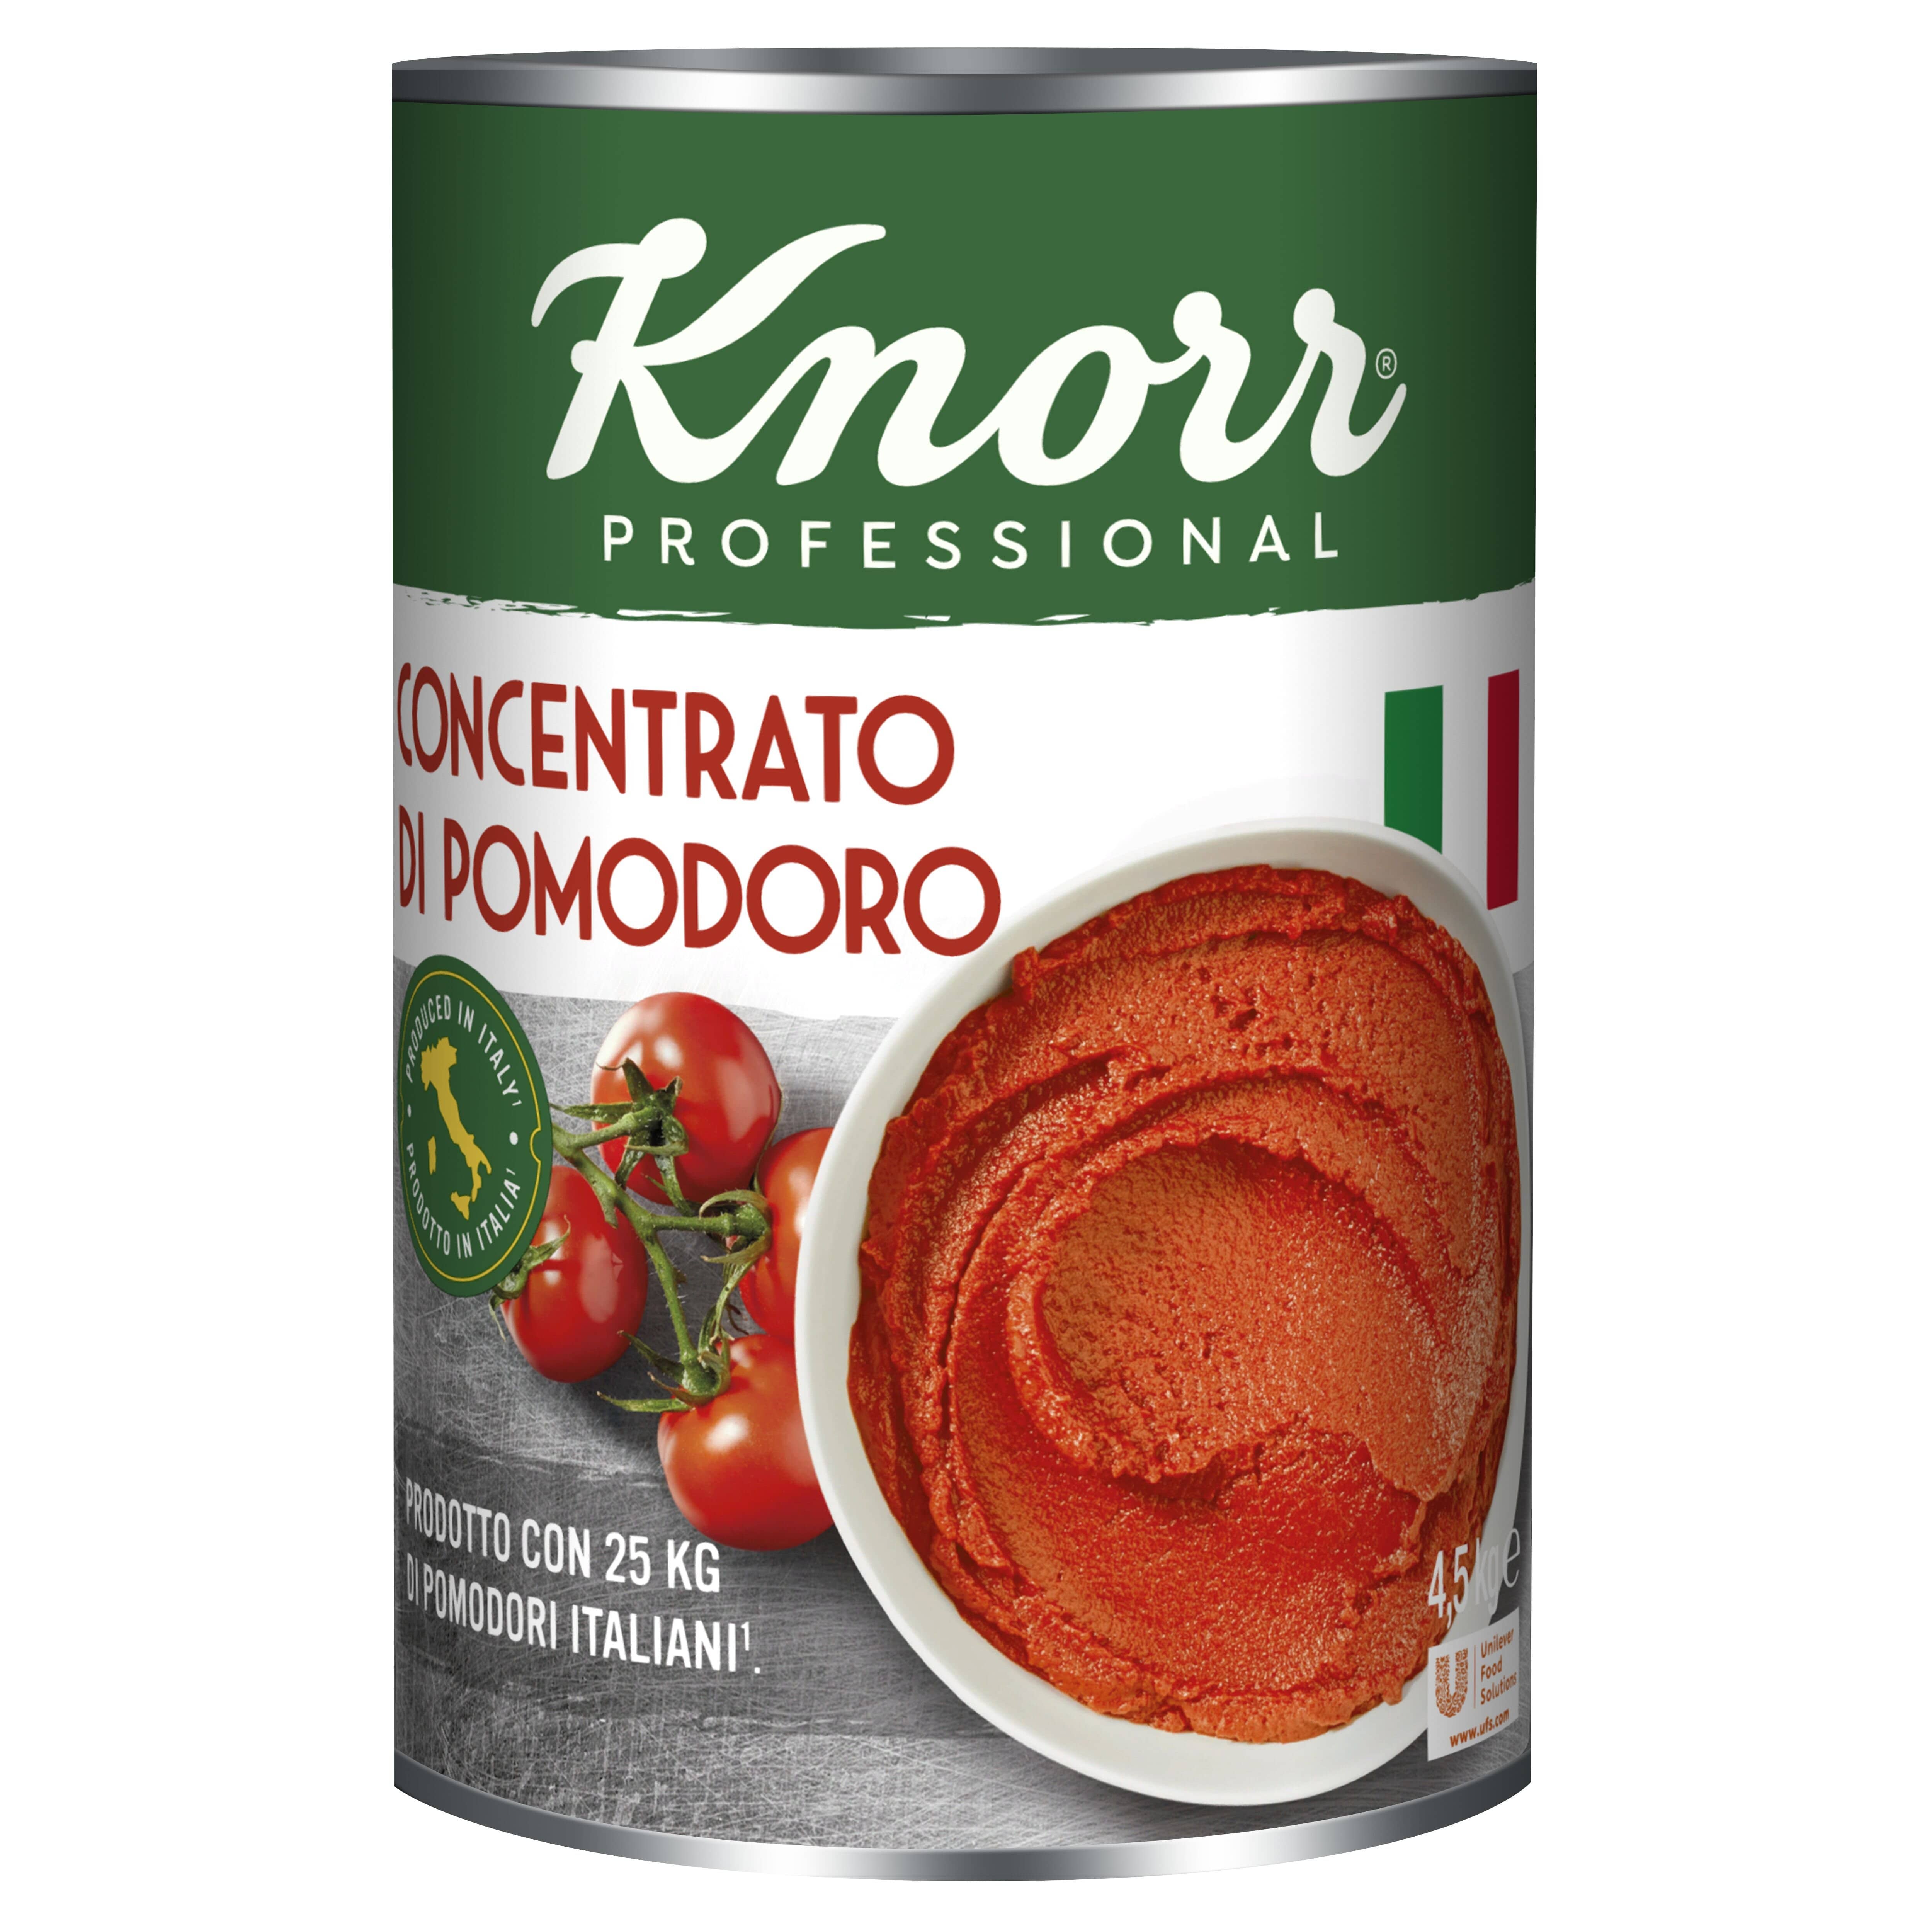 Knorr Paradajkový pretlak 4,5kg -  Knorr paradajkové variácie ponúkajú šťavnaté paradajky z Talianska.